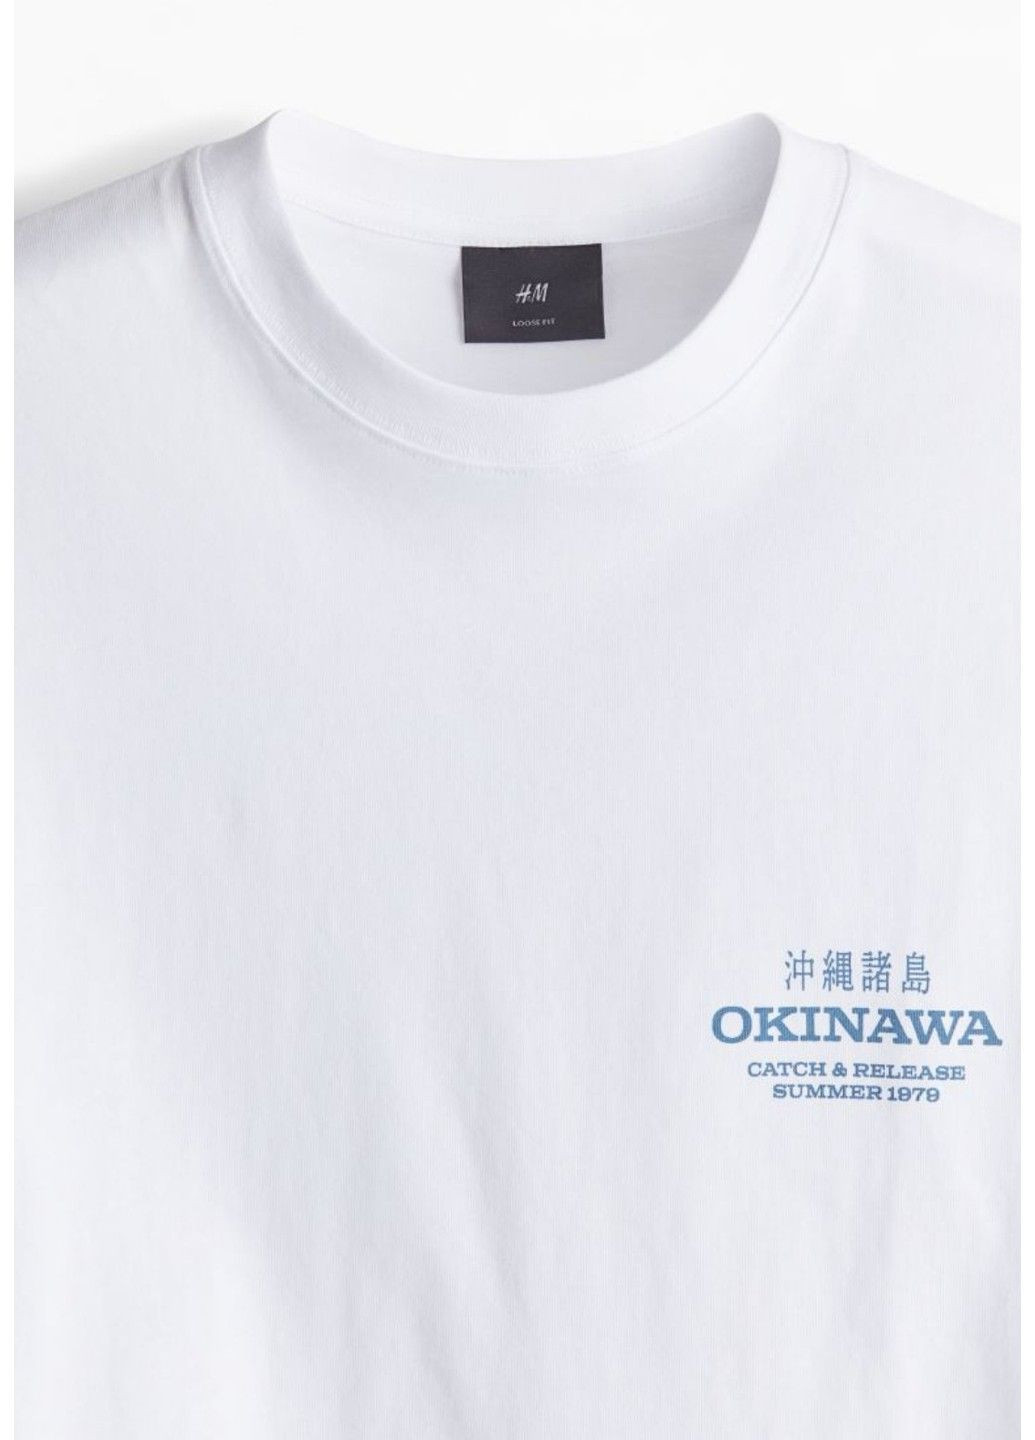 Біла чоловіча футболка вільного крою з принтом н&м (56926) s біла H&M